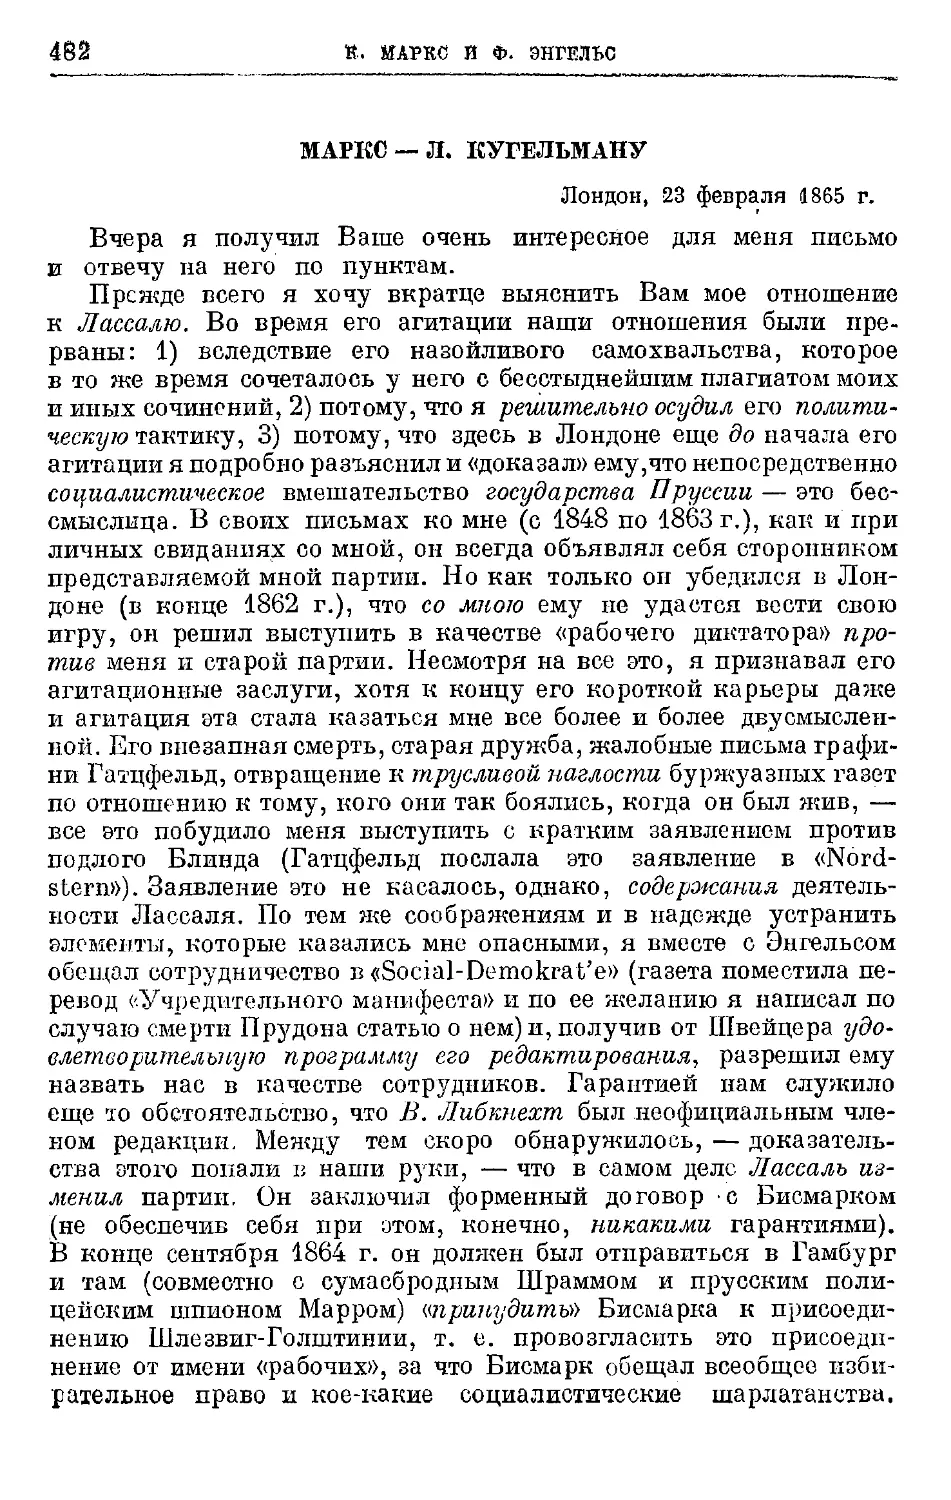 Маркс — Л. Кугельману. 23 февраля 1865г